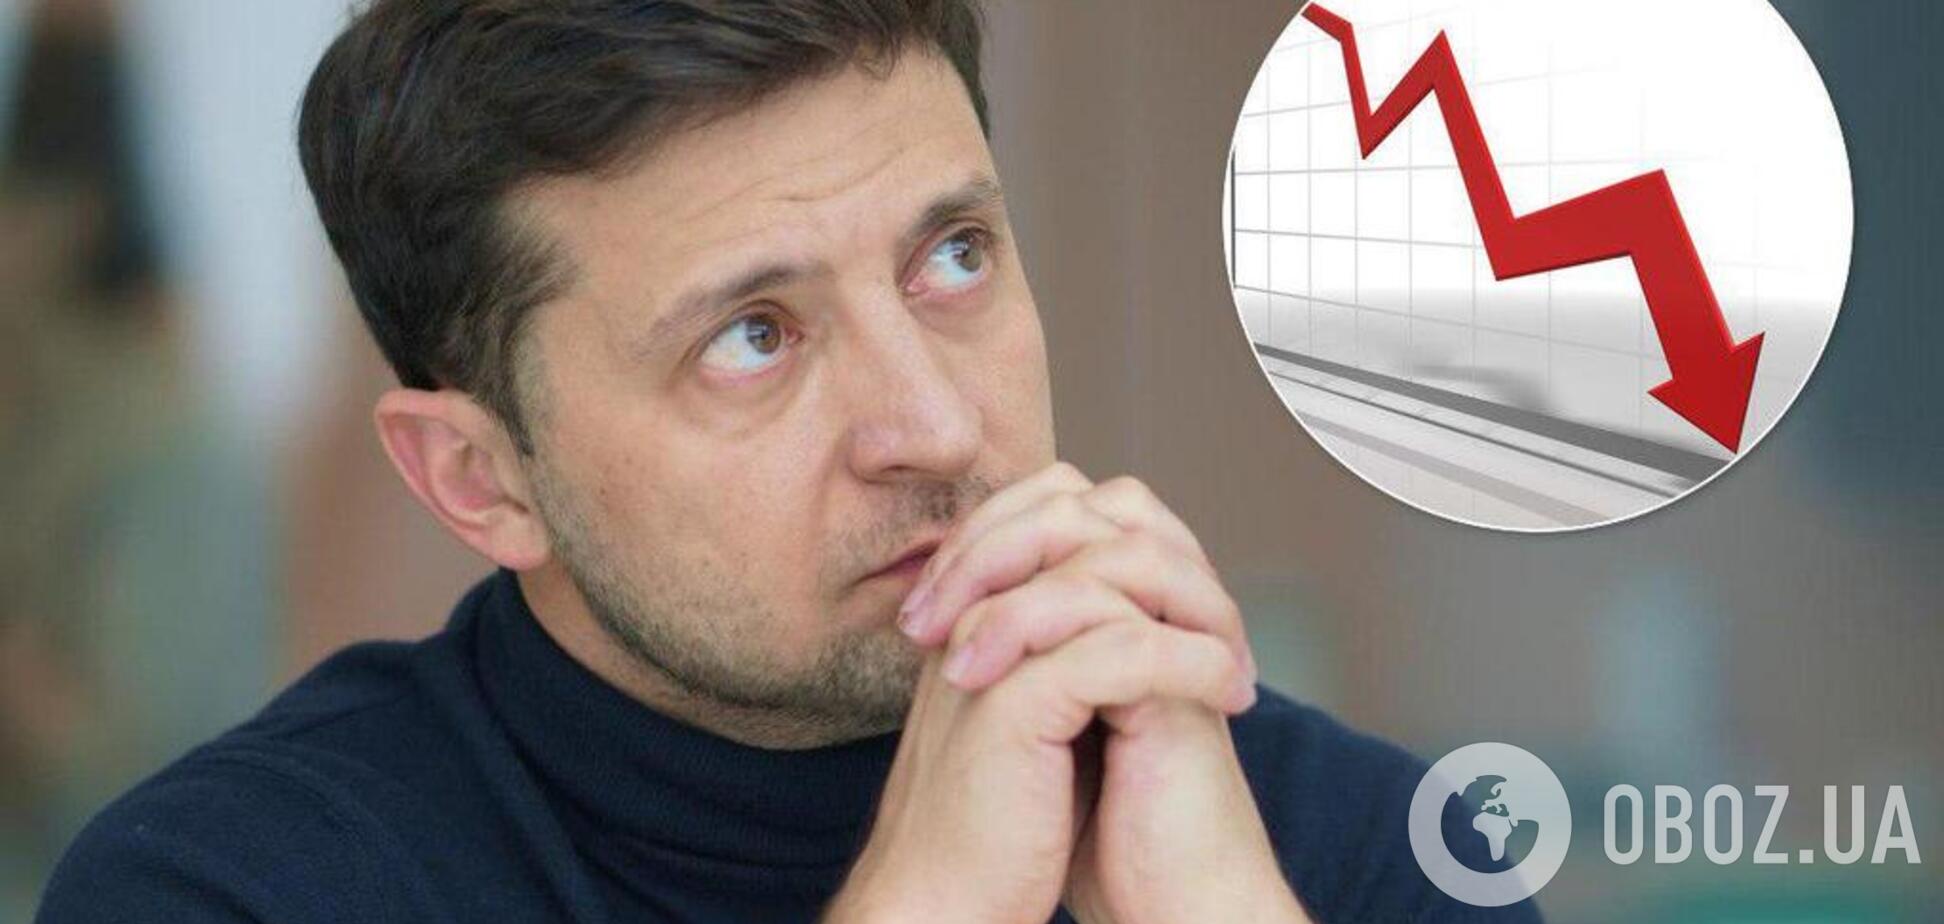 Рейтинг Зеленского стремительно падает: всплыл новый опрос